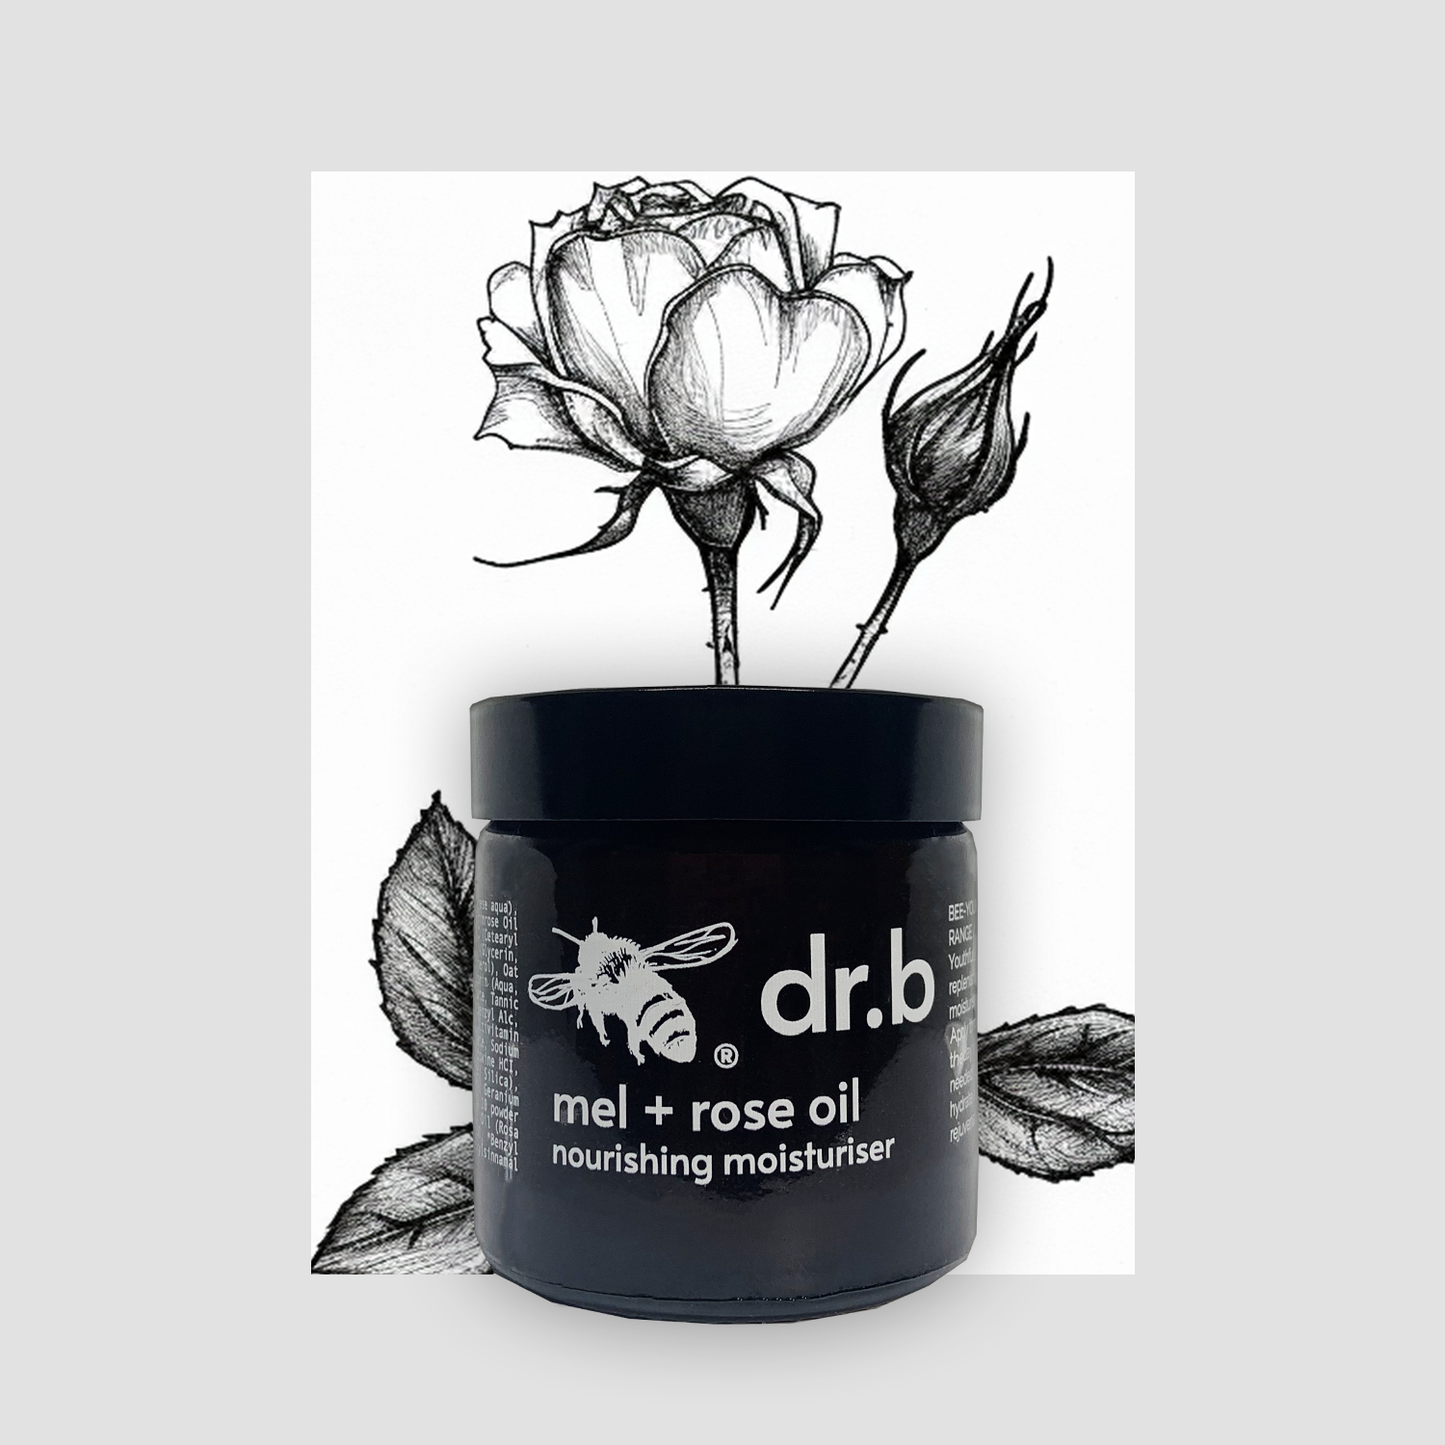 mel + rose oil nourishing moisturiser